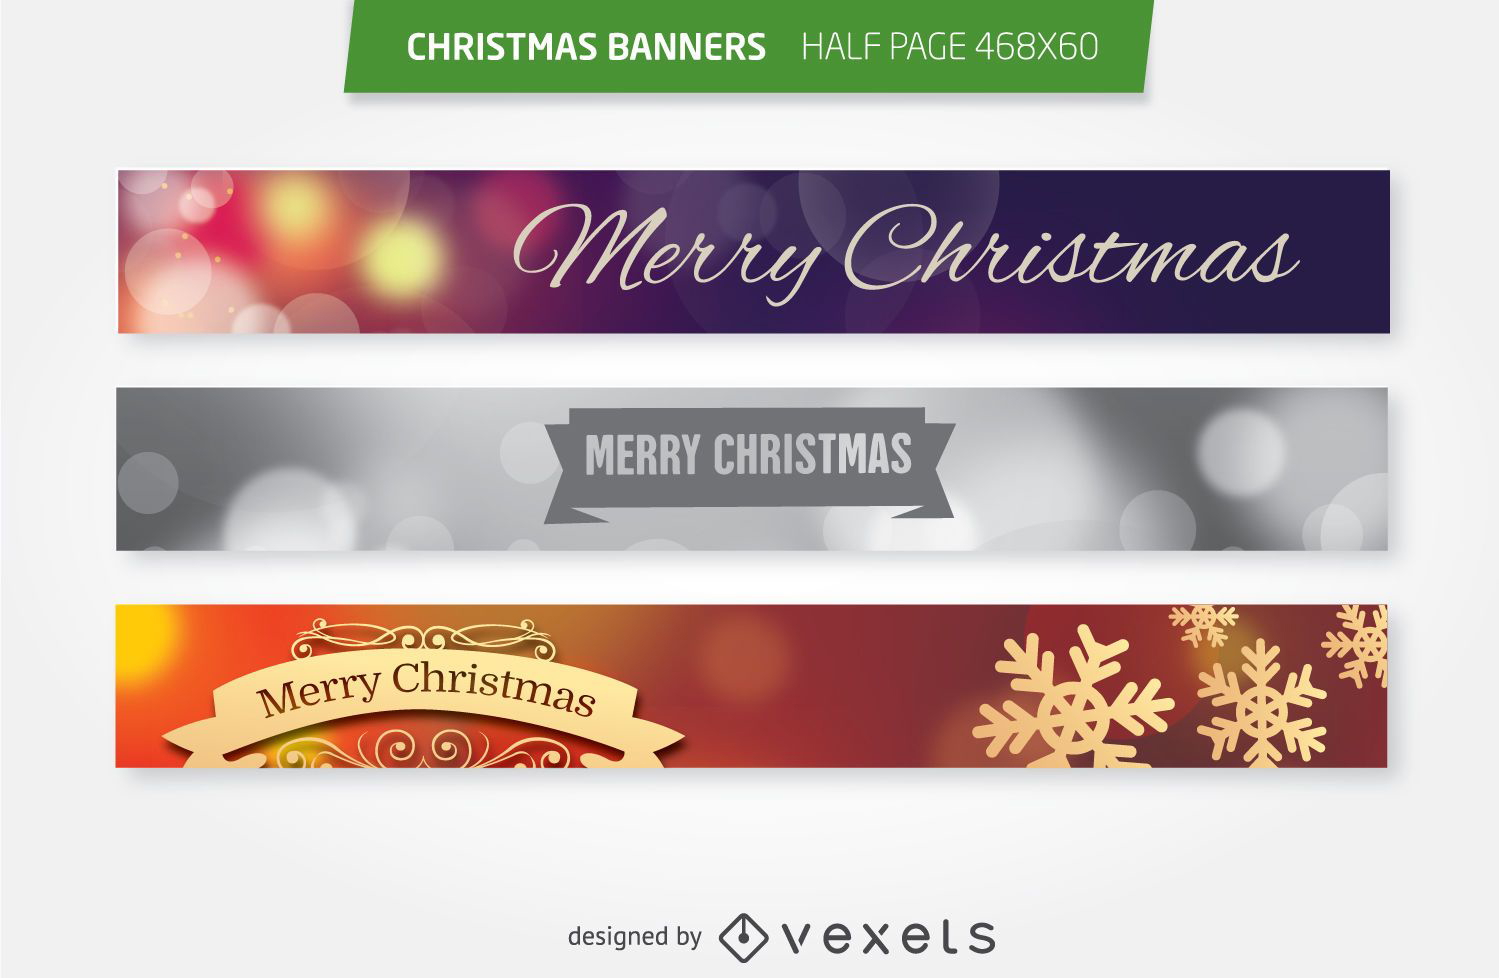 Conjunto de banners publicitarios de media página de Navidad 468x60